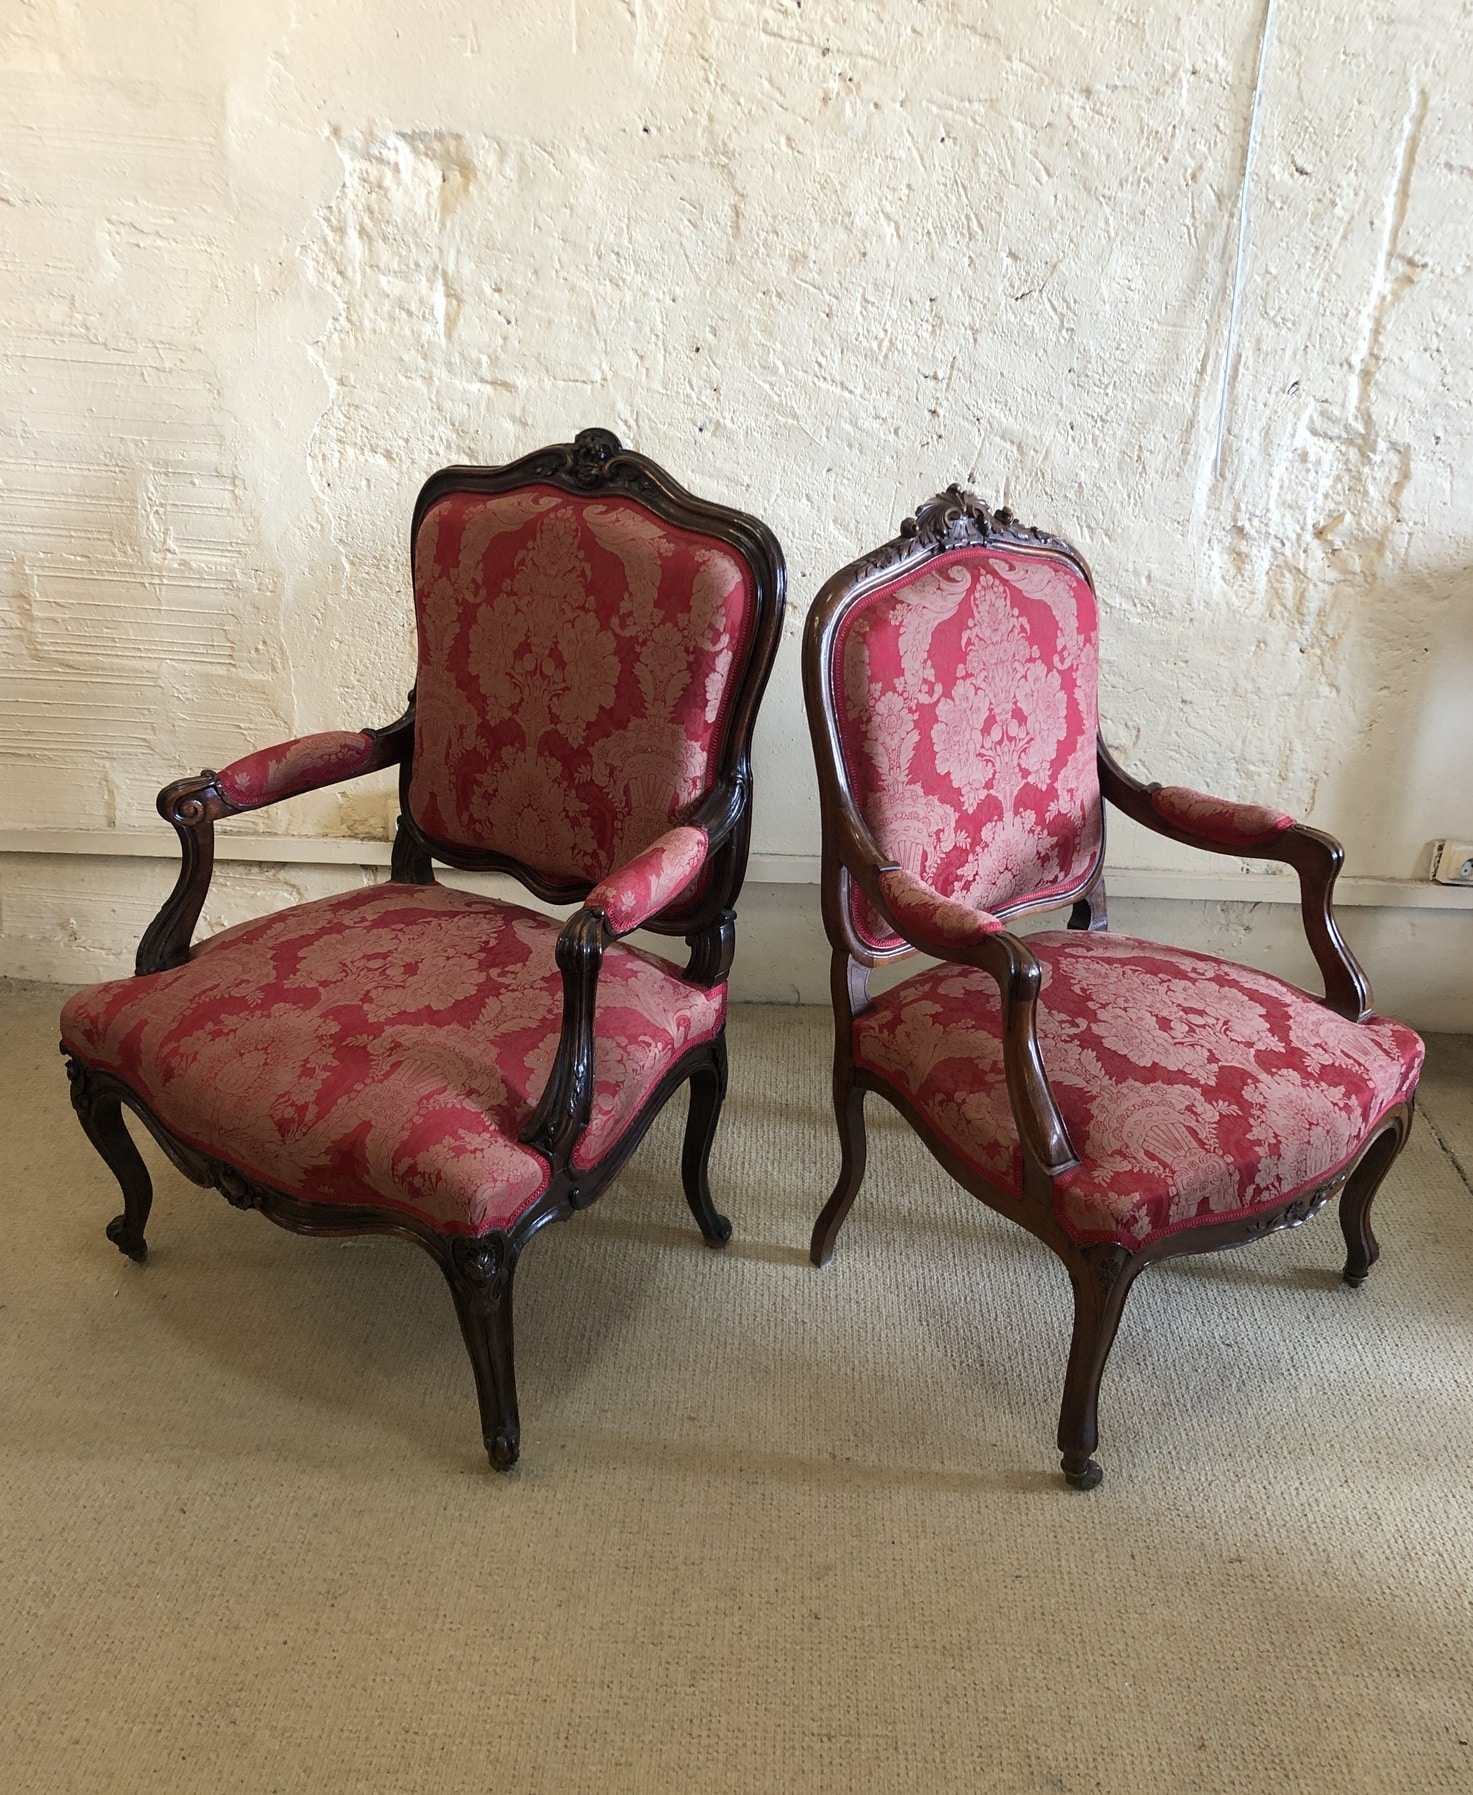 Fausse paire de fauteuils de style Louis XV, XIXe siècle